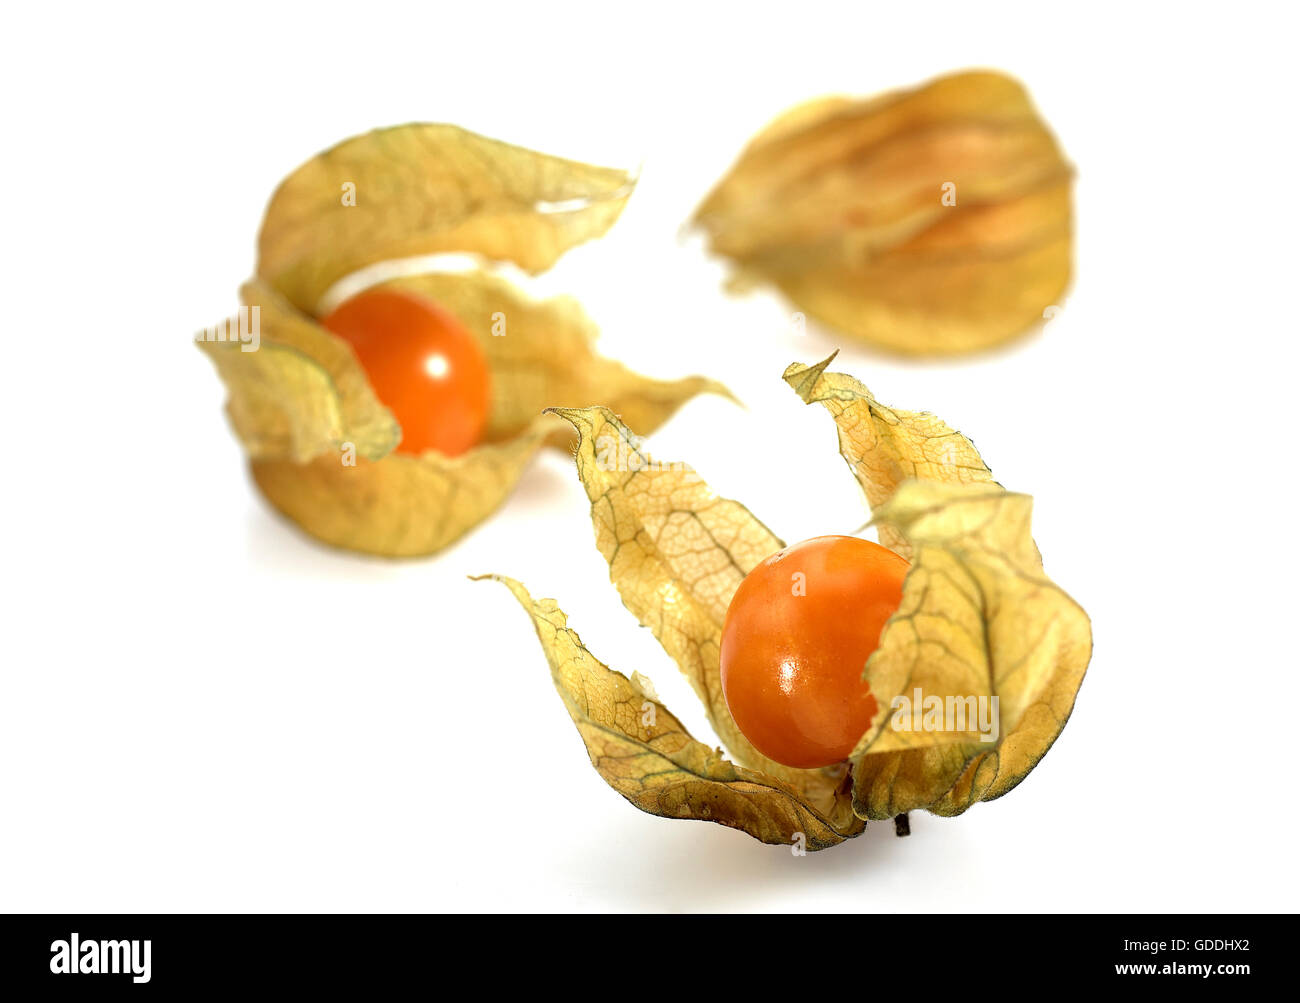 Chinese Lantern Fruit, physalis alkekengi, Fruits against white Background Stock Photo